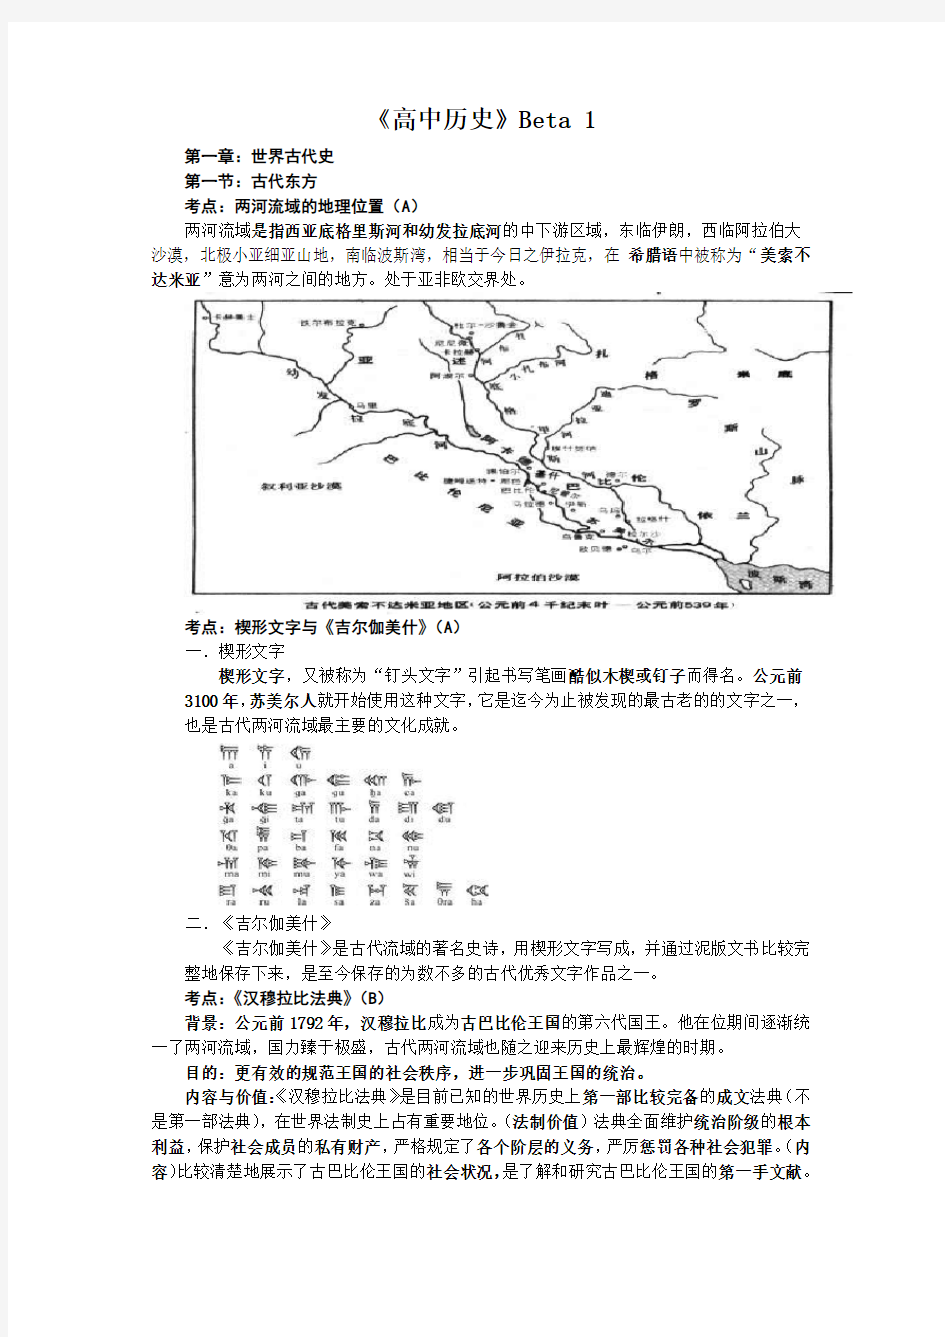 华师大版 上海高中教材《高中历史》 1-7册整理